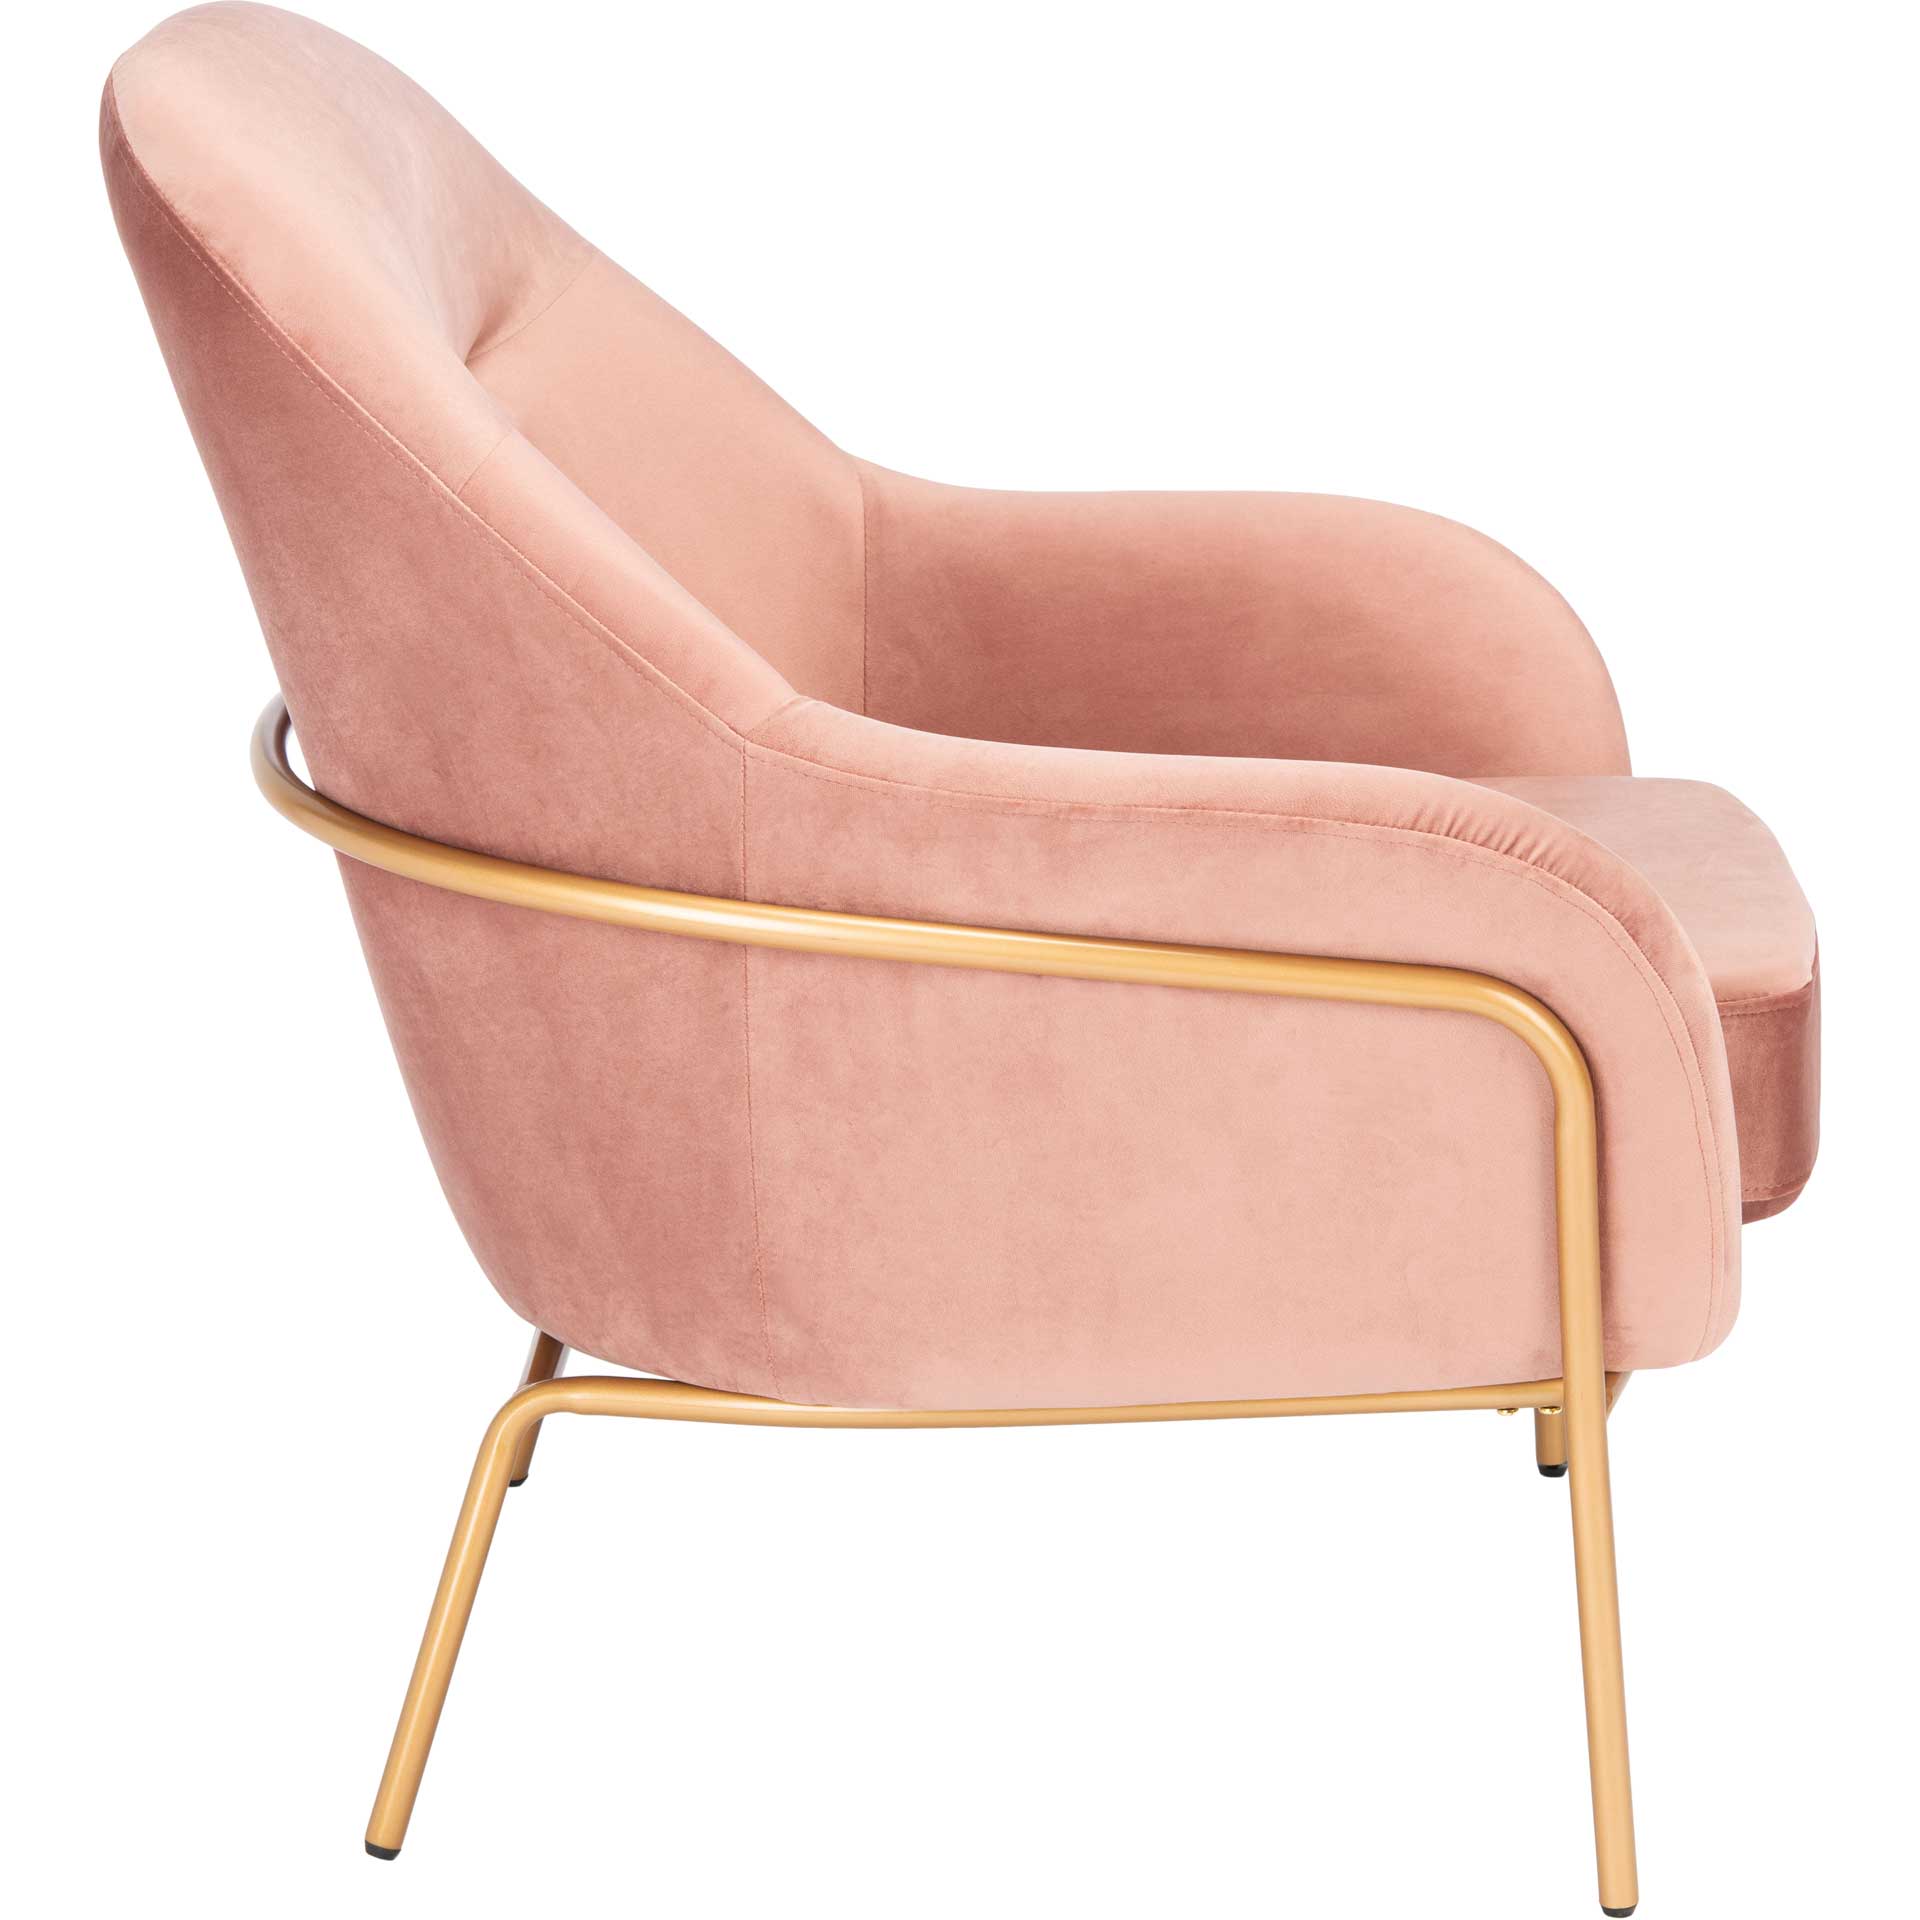 Eldon Velvet Accent Chair Dusty Rose/Gold